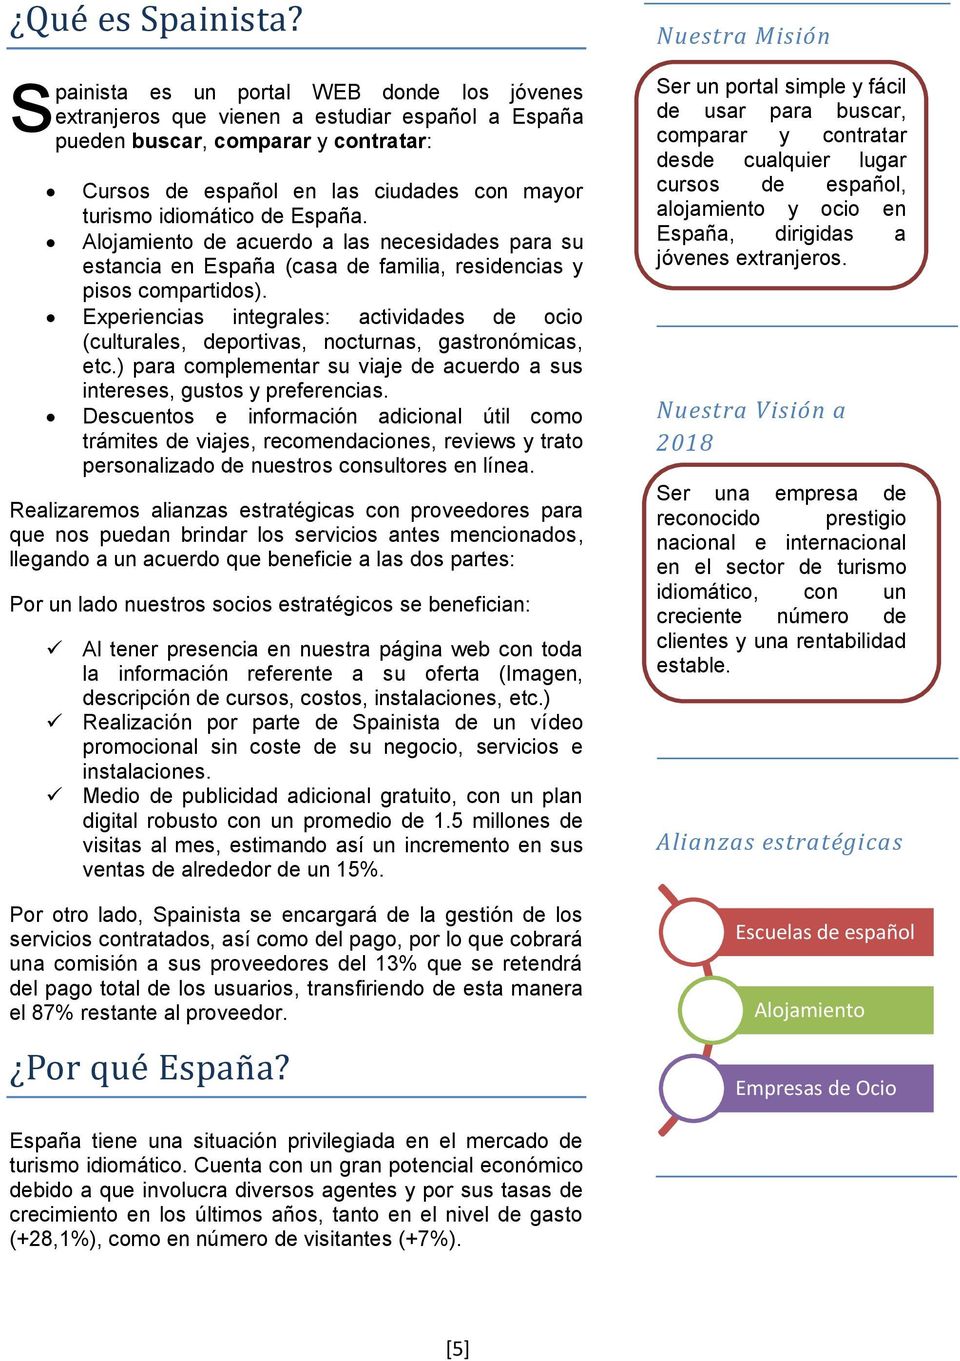 España. Alojamiento de acuerdo a las necesidades para su estancia en España (casa de familia, residencias y pisos compartidos).